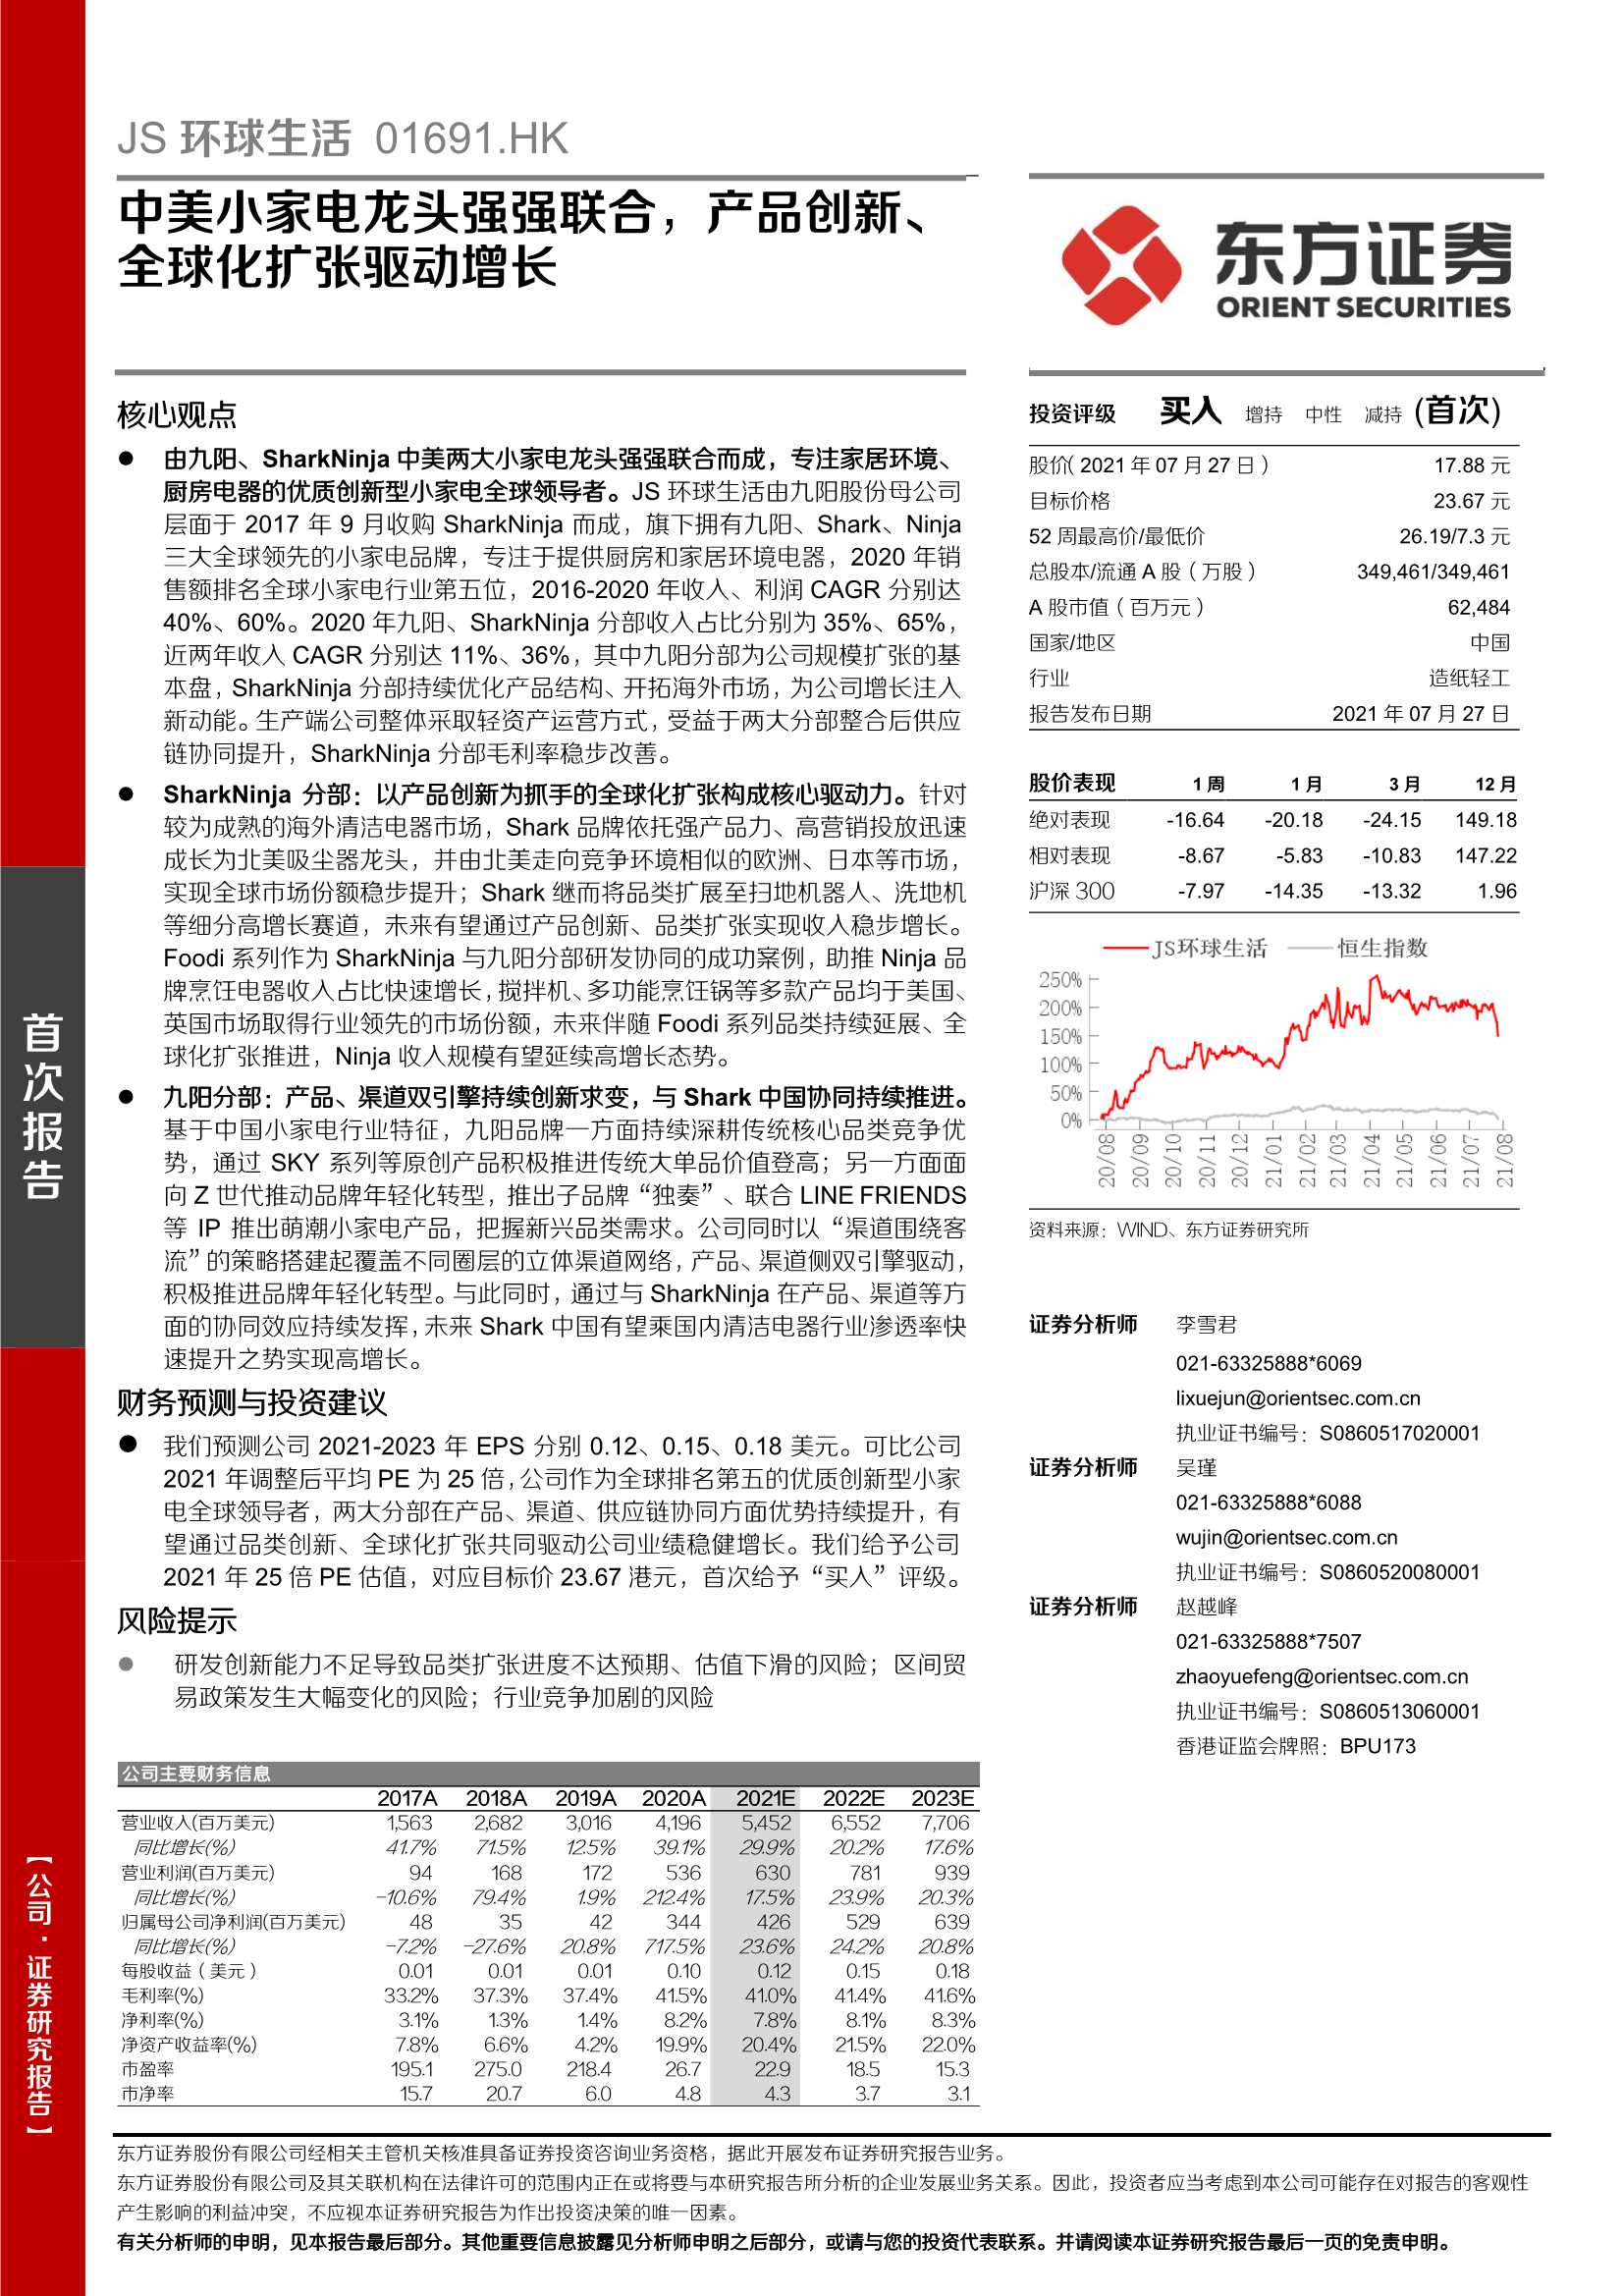 东方证券-JS环球生活-1691.HK-中美小家电龙头强强联合，产品创新、全球化扩张驱动增长-20210727-35页